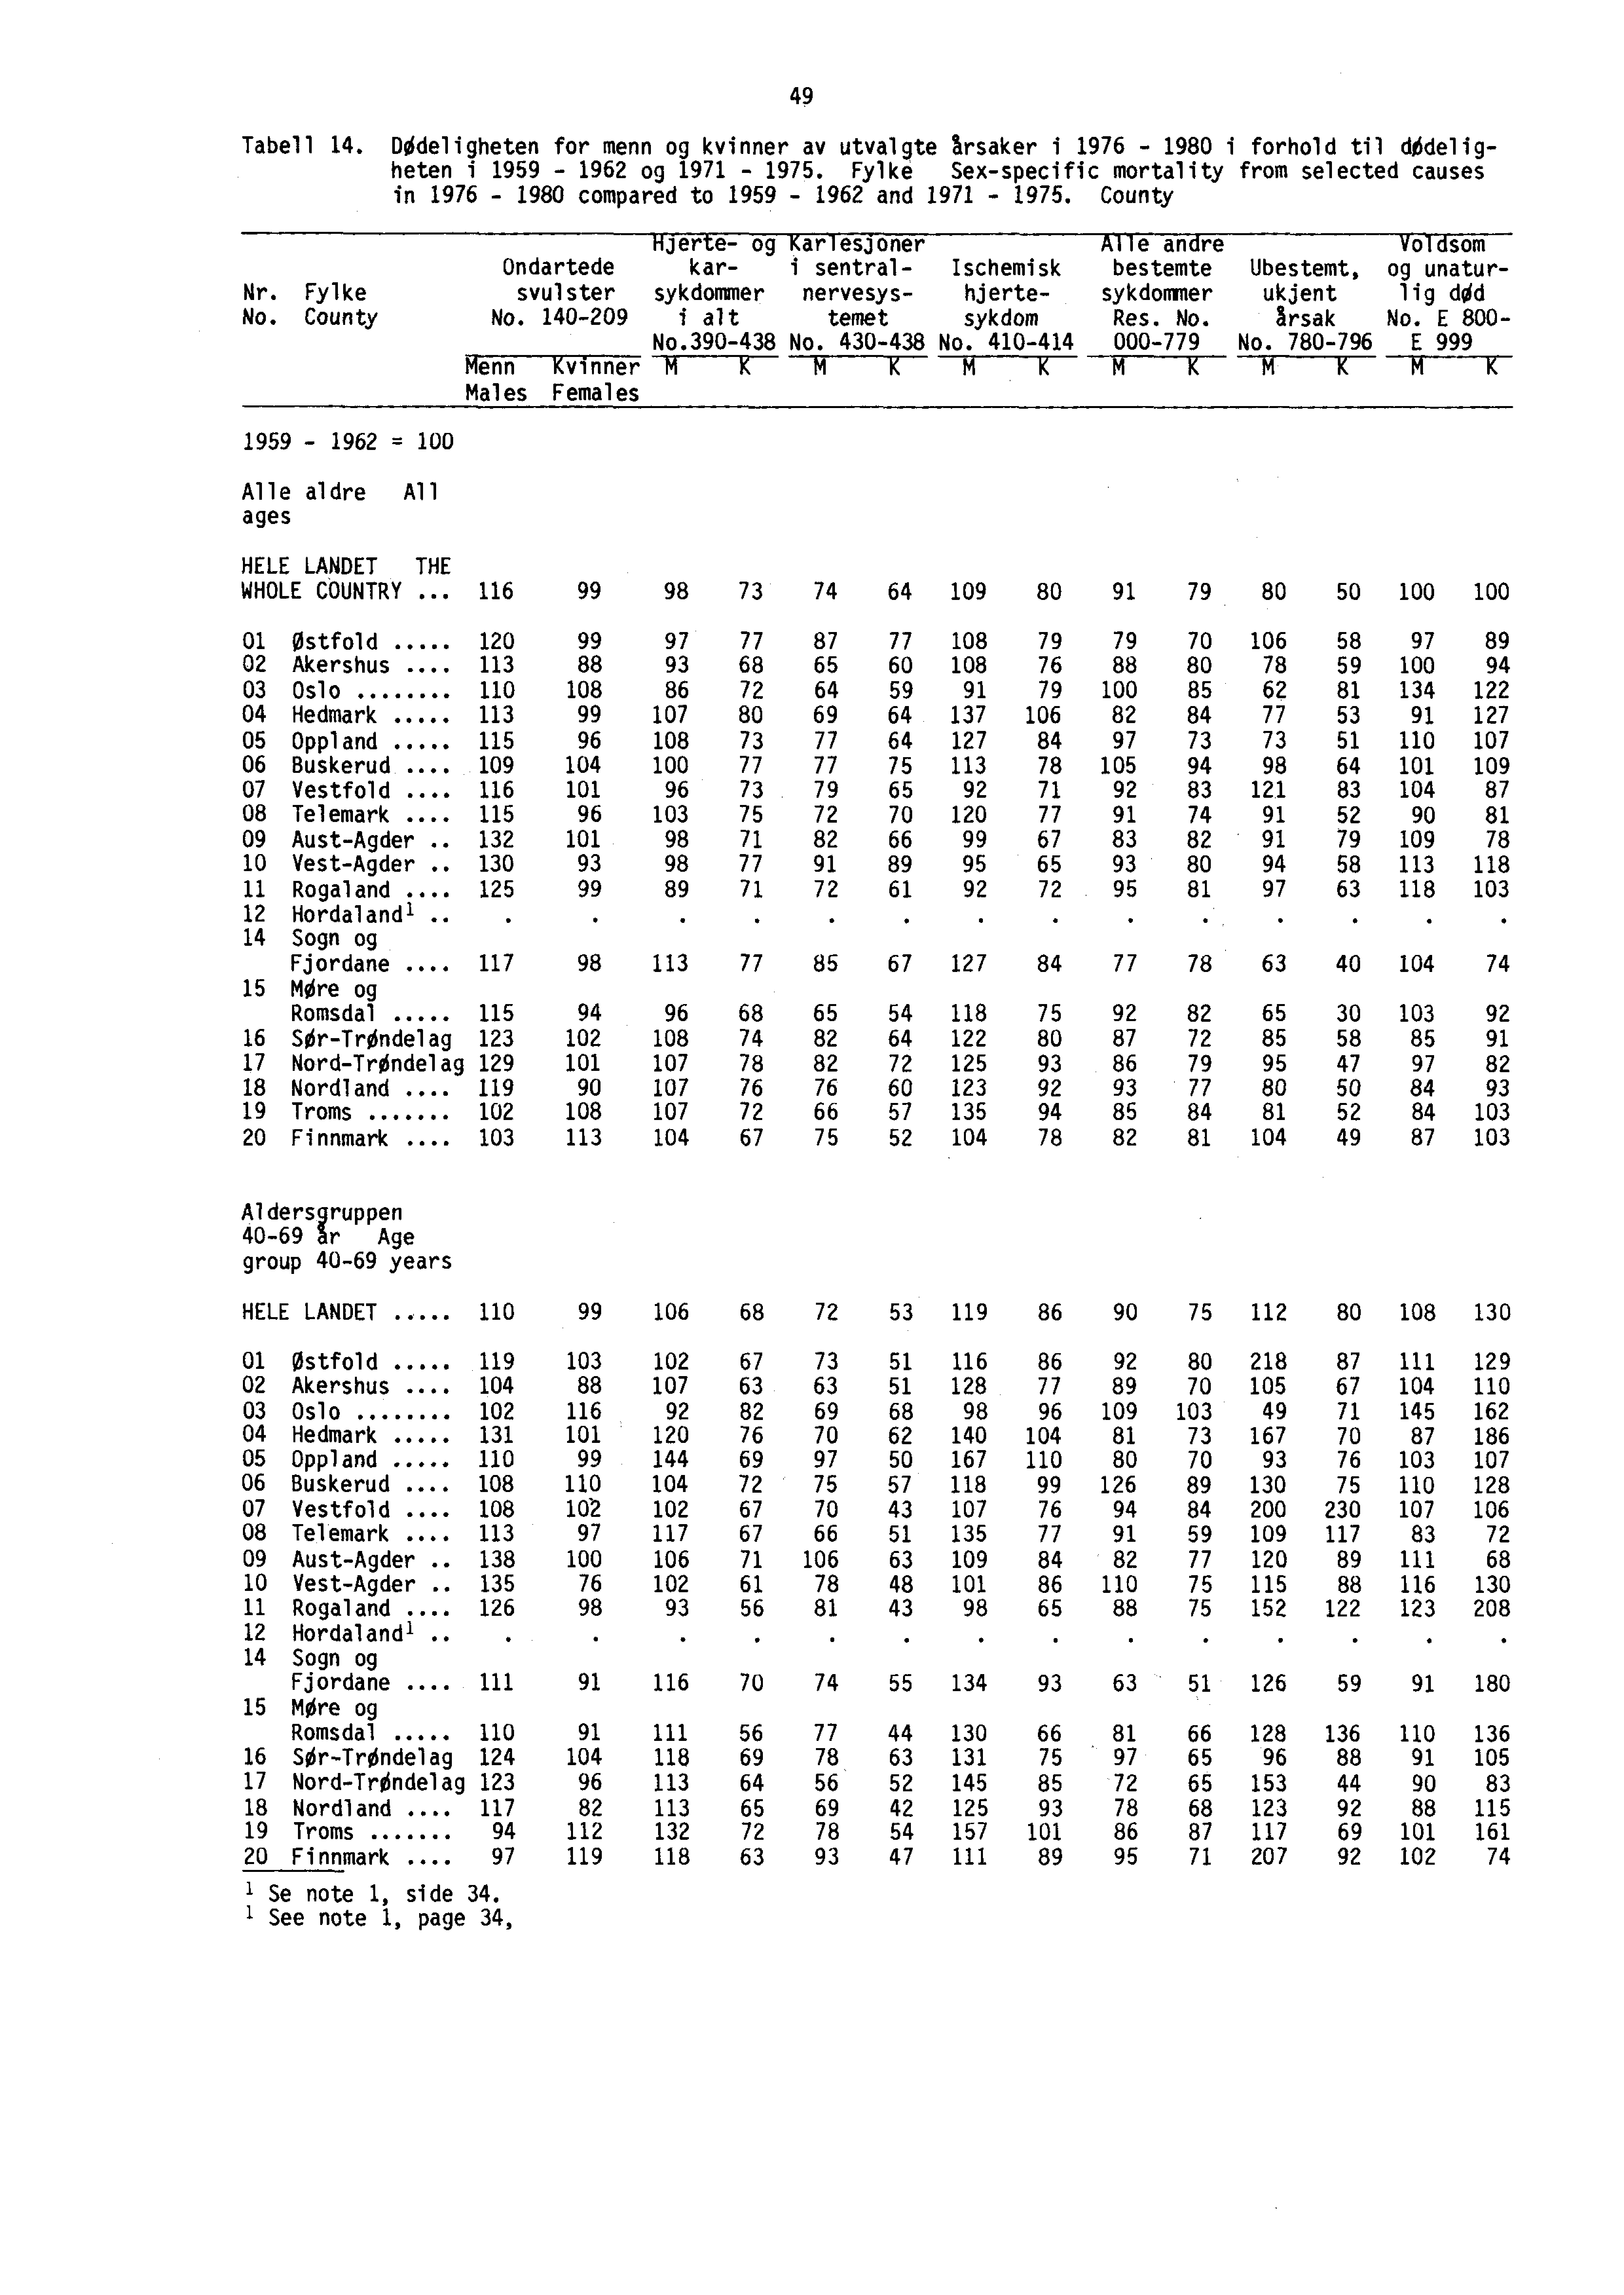 49 Tabell 14. Dødeligheten for menn og kvinner av utvalgte rsaker i 1976-1980 i forhold til dødeligheten i 1959-1962 og 1971-1975.